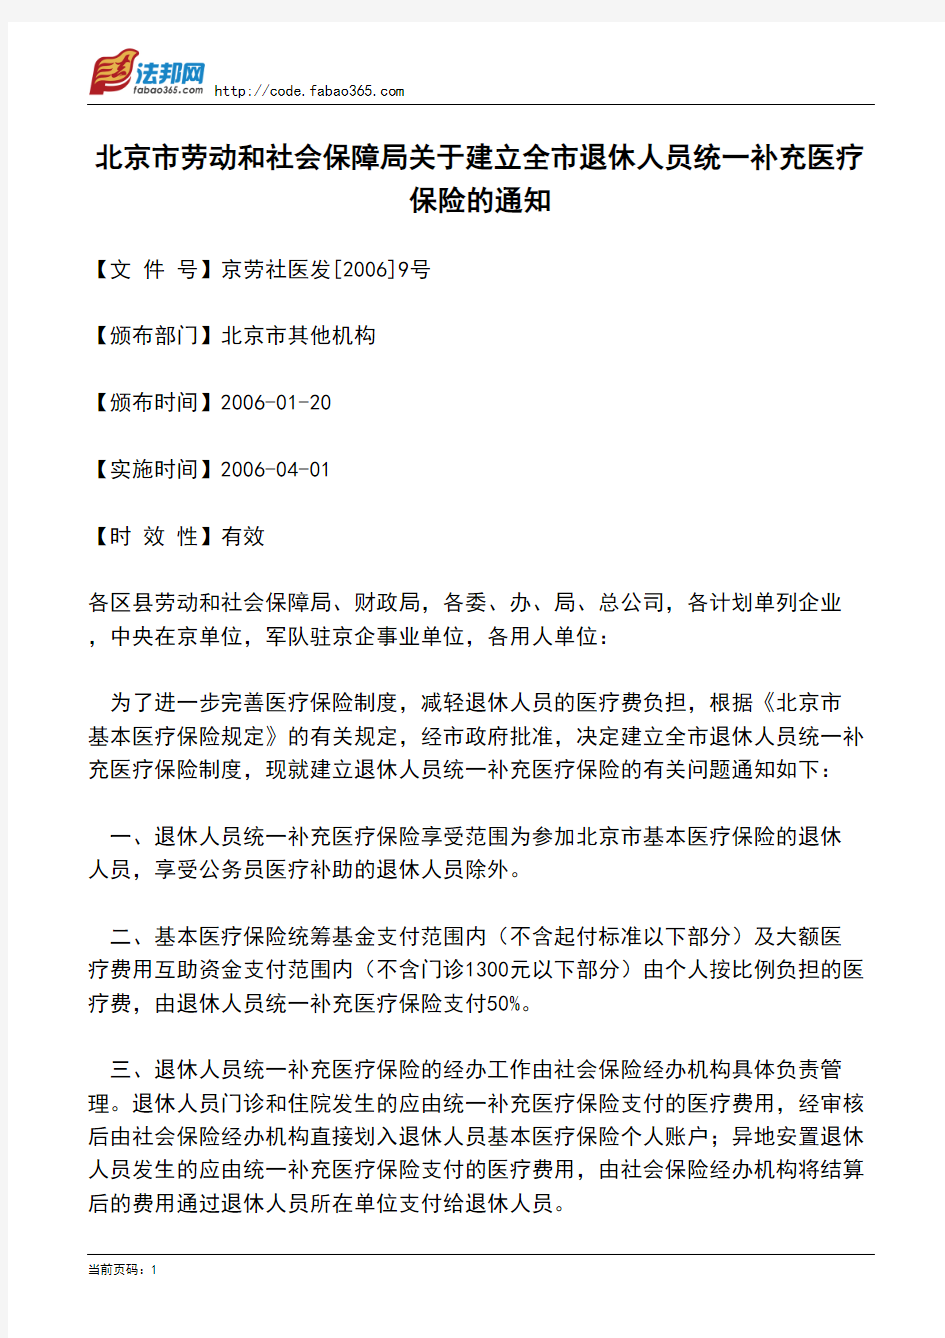 北京市劳动和社会保障局关于建立全市退休人员统一补充医疗保险的通知